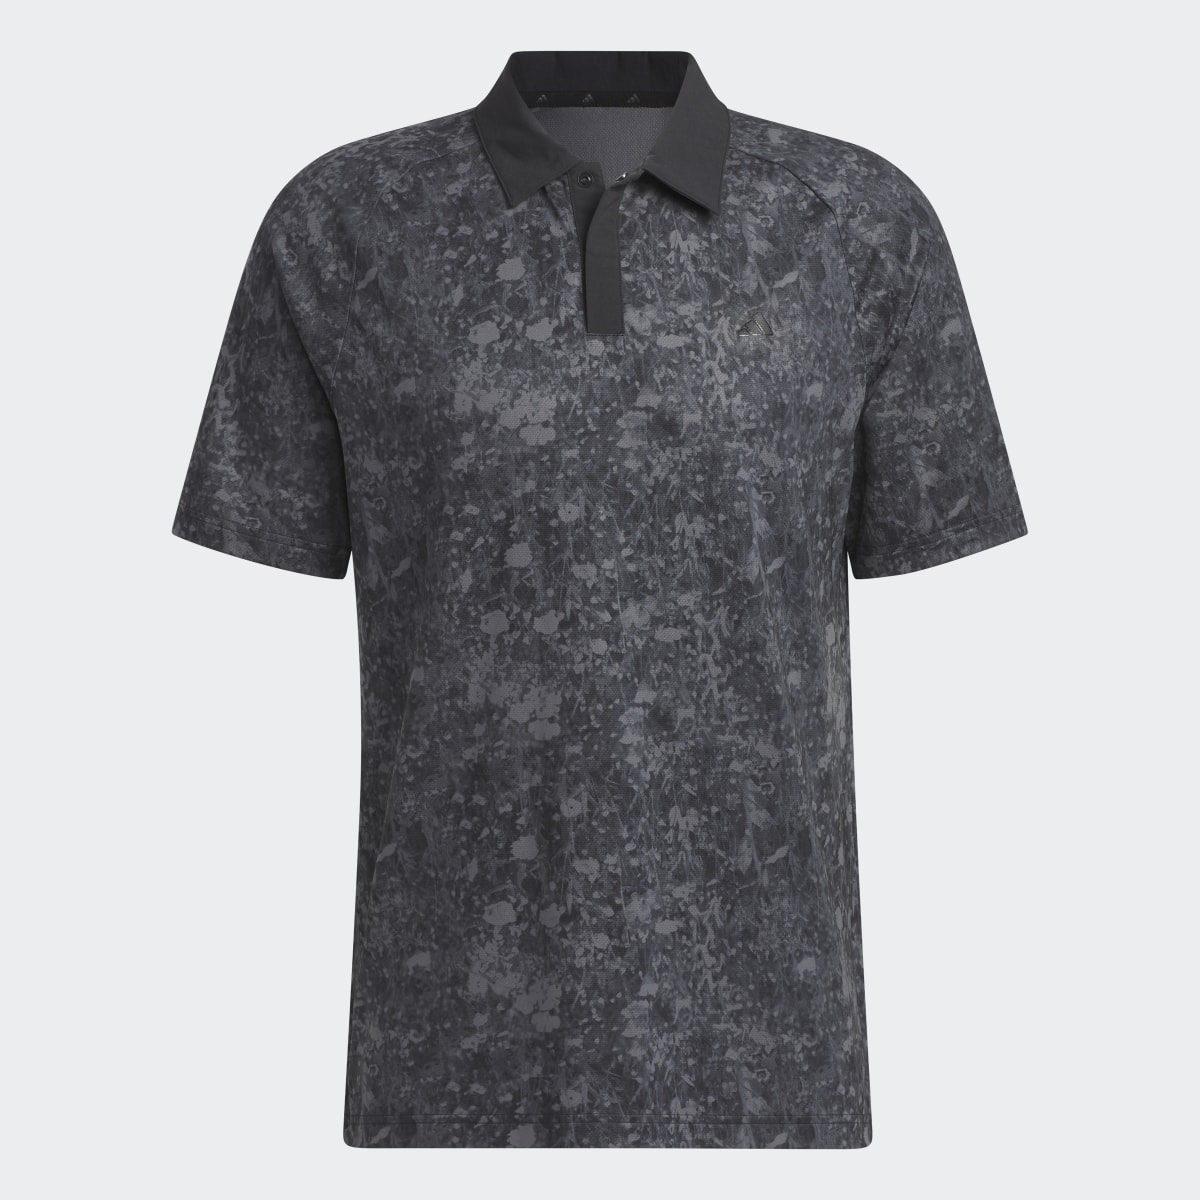 Adidas Mesh Ultimate365 Tour Print Golf Polo Shirt. 6